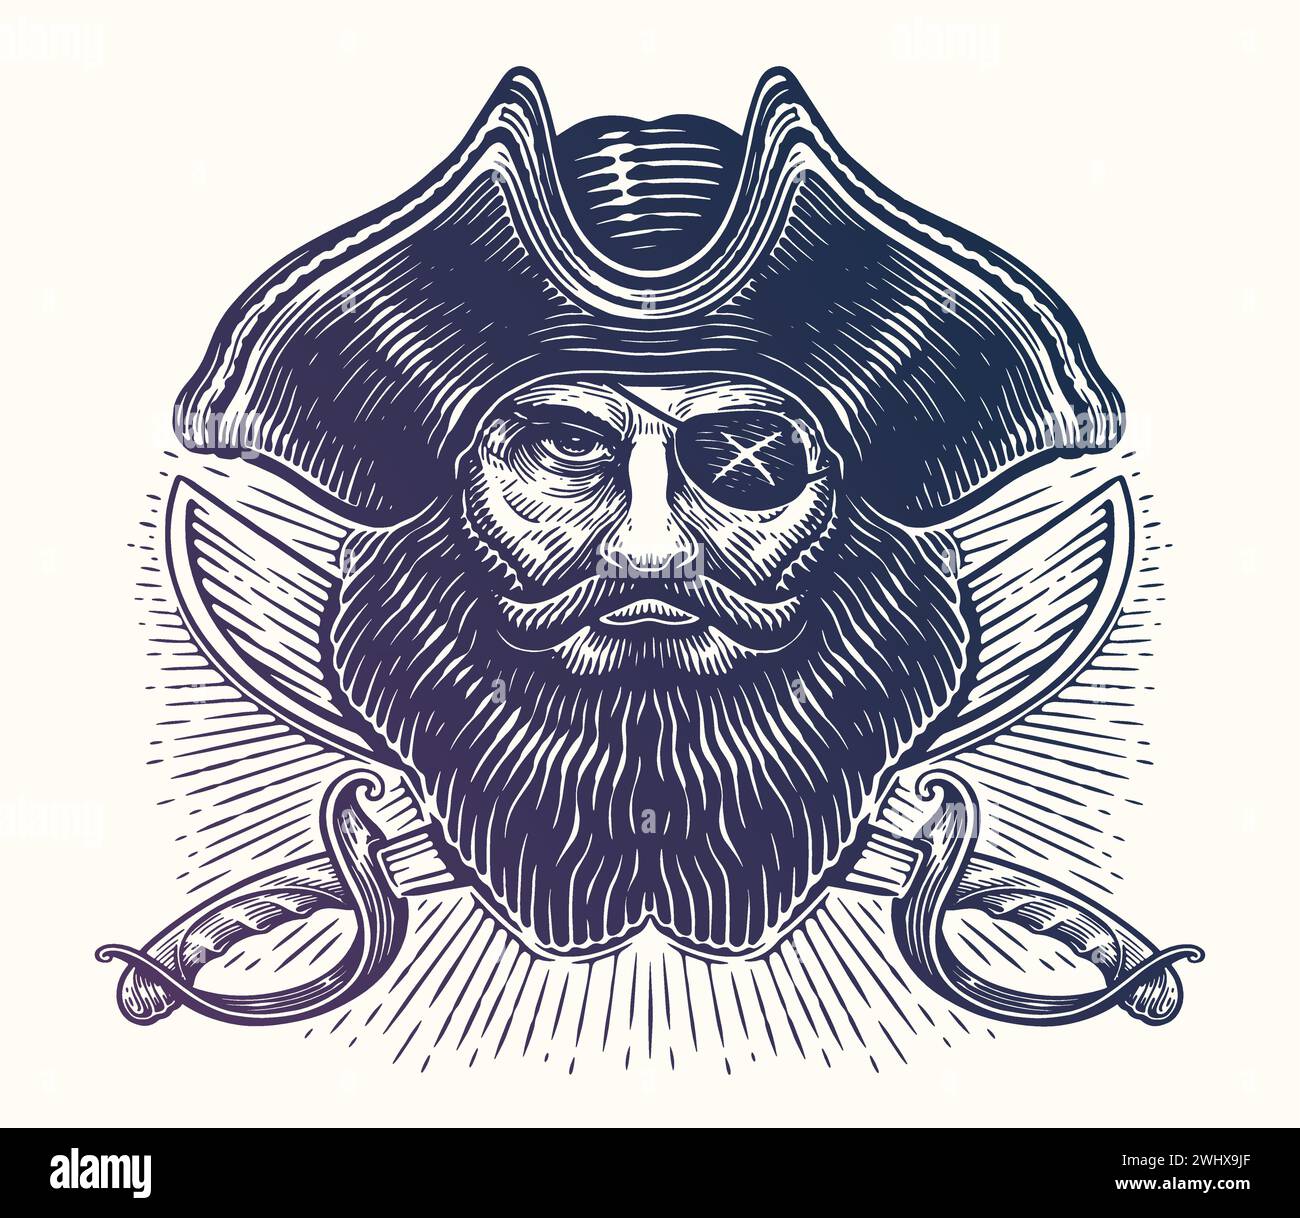 Testa di pirata sopra le sciabole incrociate. Black Mark, Corsair, Jolly Roger. Stile di incisione dello schizzo dell'illustrazione vettoriale Illustrazione Vettoriale